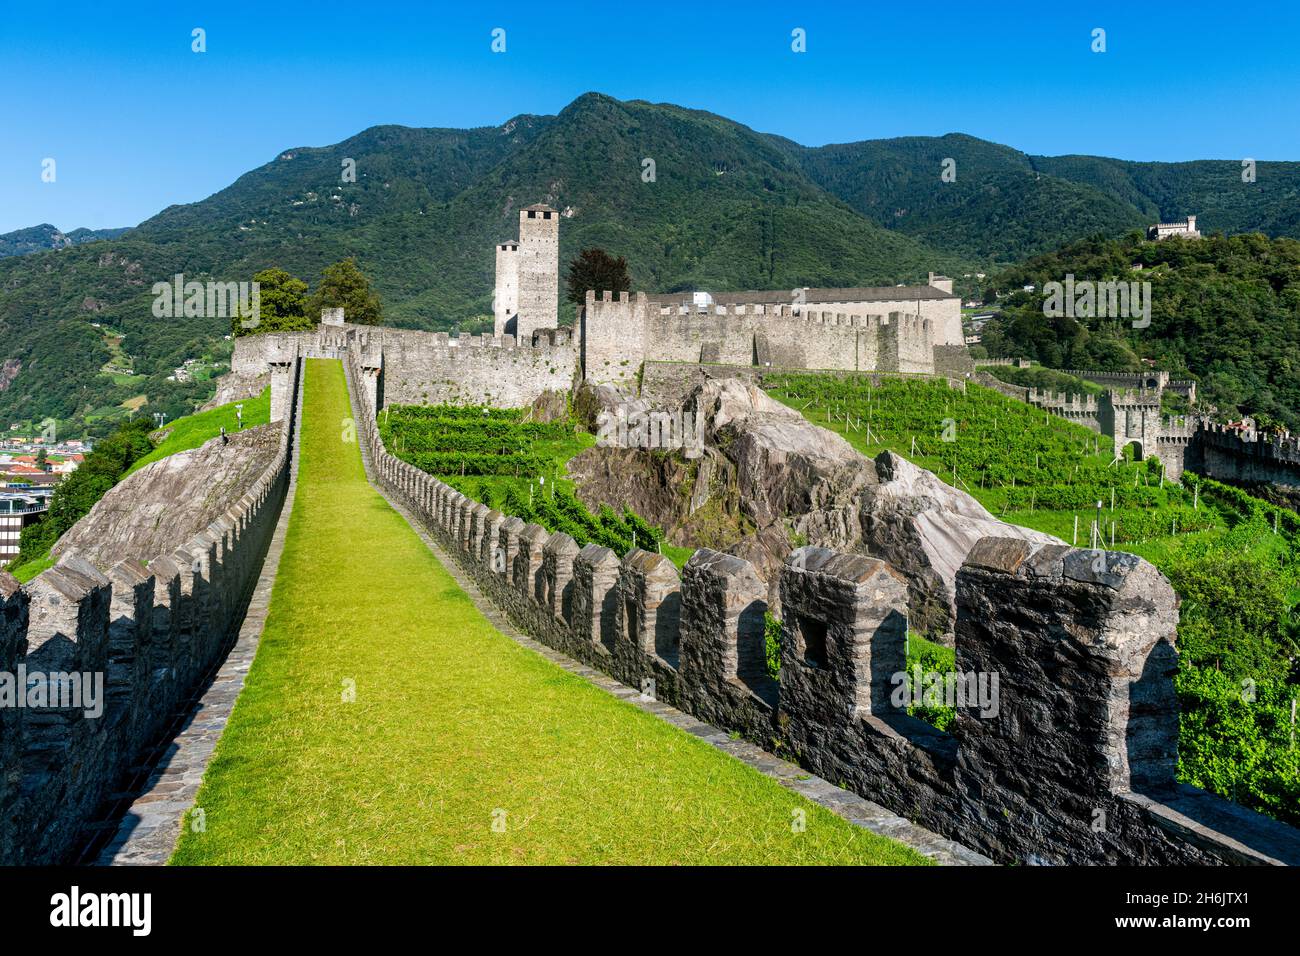 Vignobles de Castelgrande, trois châteaux de Bellinzona site classé au patrimoine mondial de l'UNESCO, Tessin, Suisse, Europe Banque D'Images